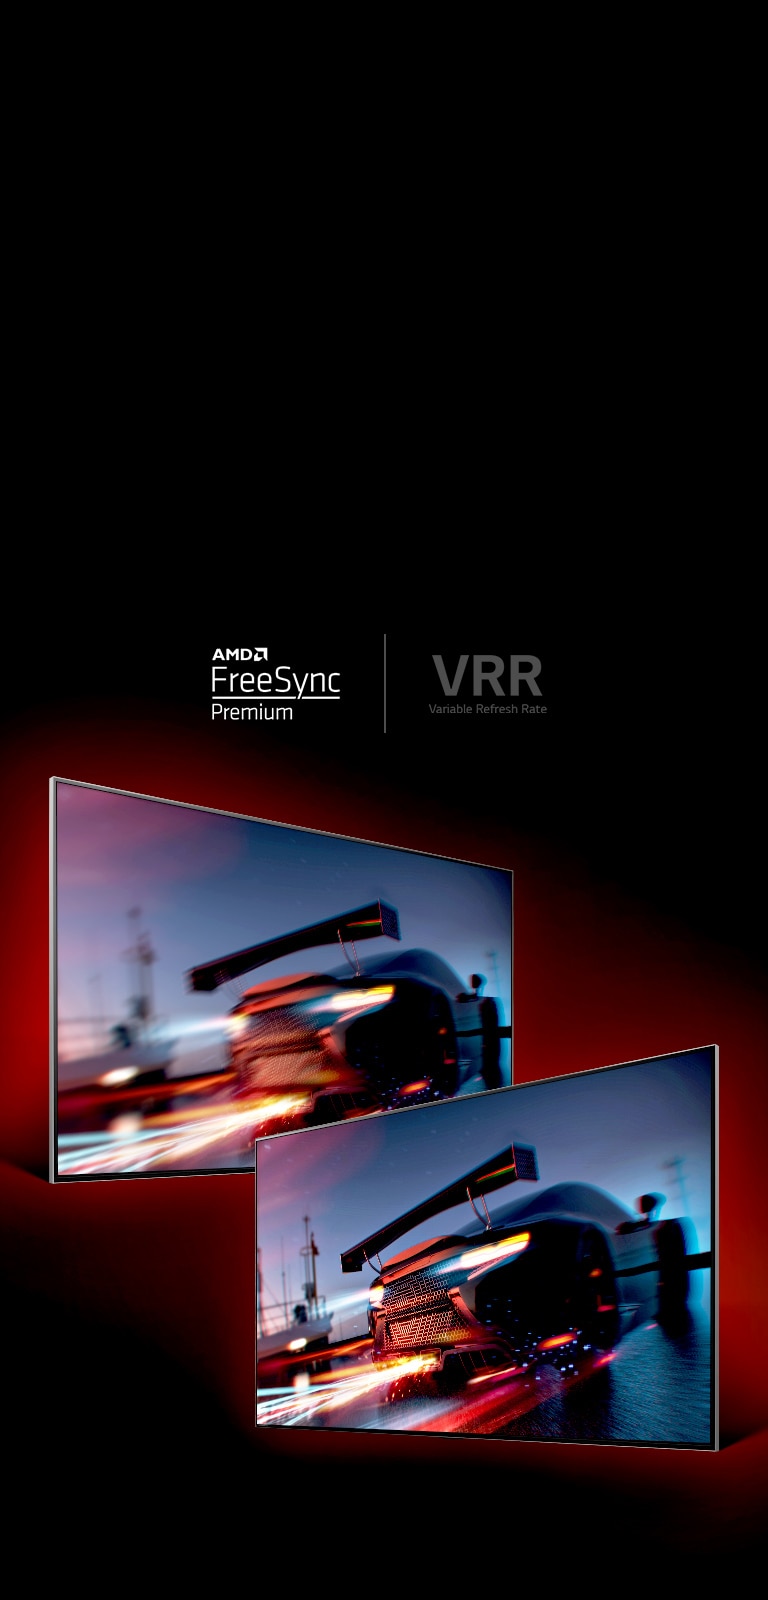 Hai màn hình TV đối diện nhau. TV bên trái hiển thị một chiếc xe đua đang đi nhanh trông có vẻ khá mờ trong khi TV bên phải cho thấy một chiếc xe đua đang đi nhanh nhưng rất rõ ràng.